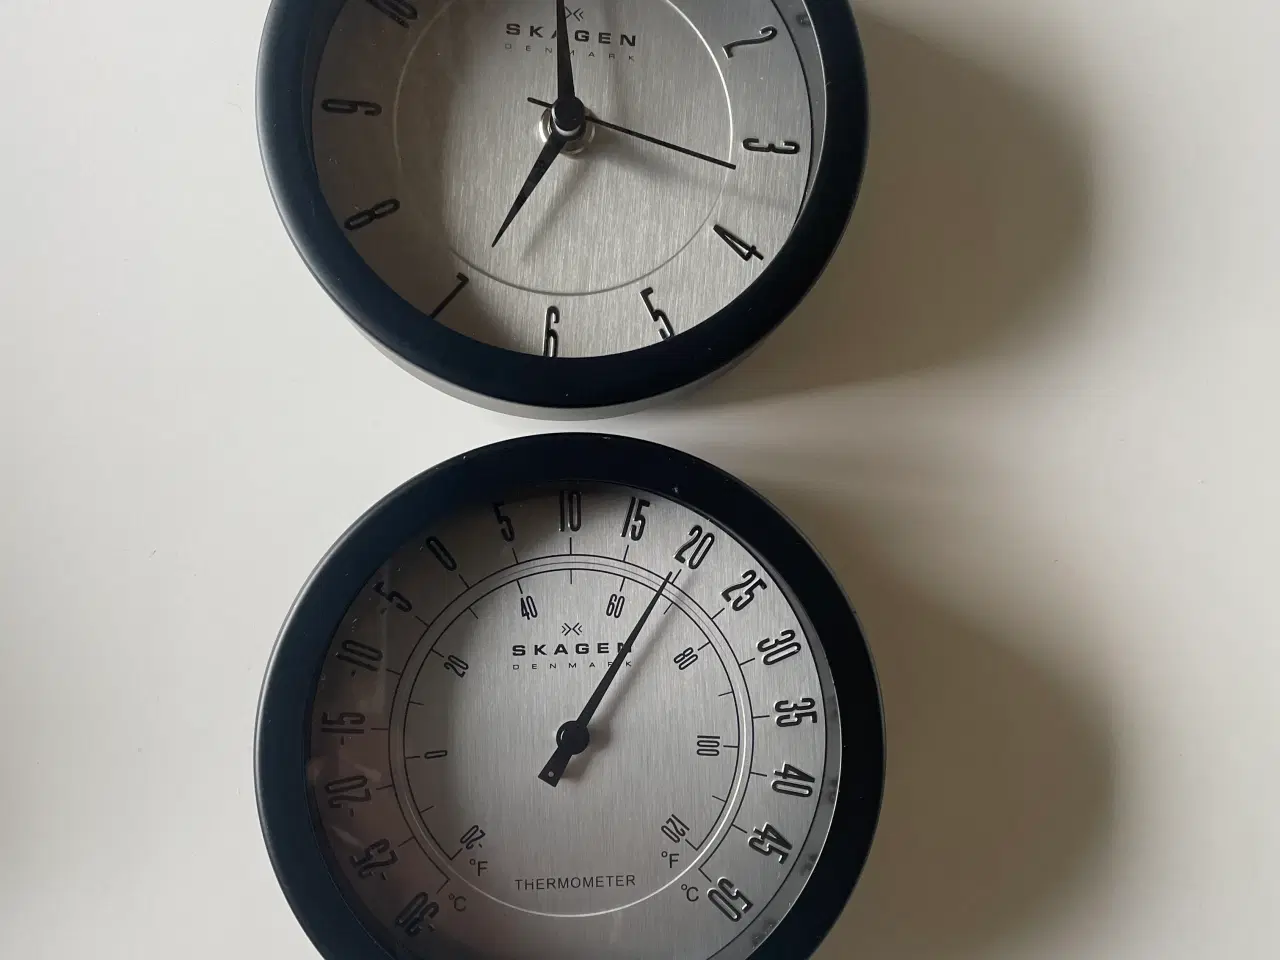 Billede 1 - Skagen ur og termometer